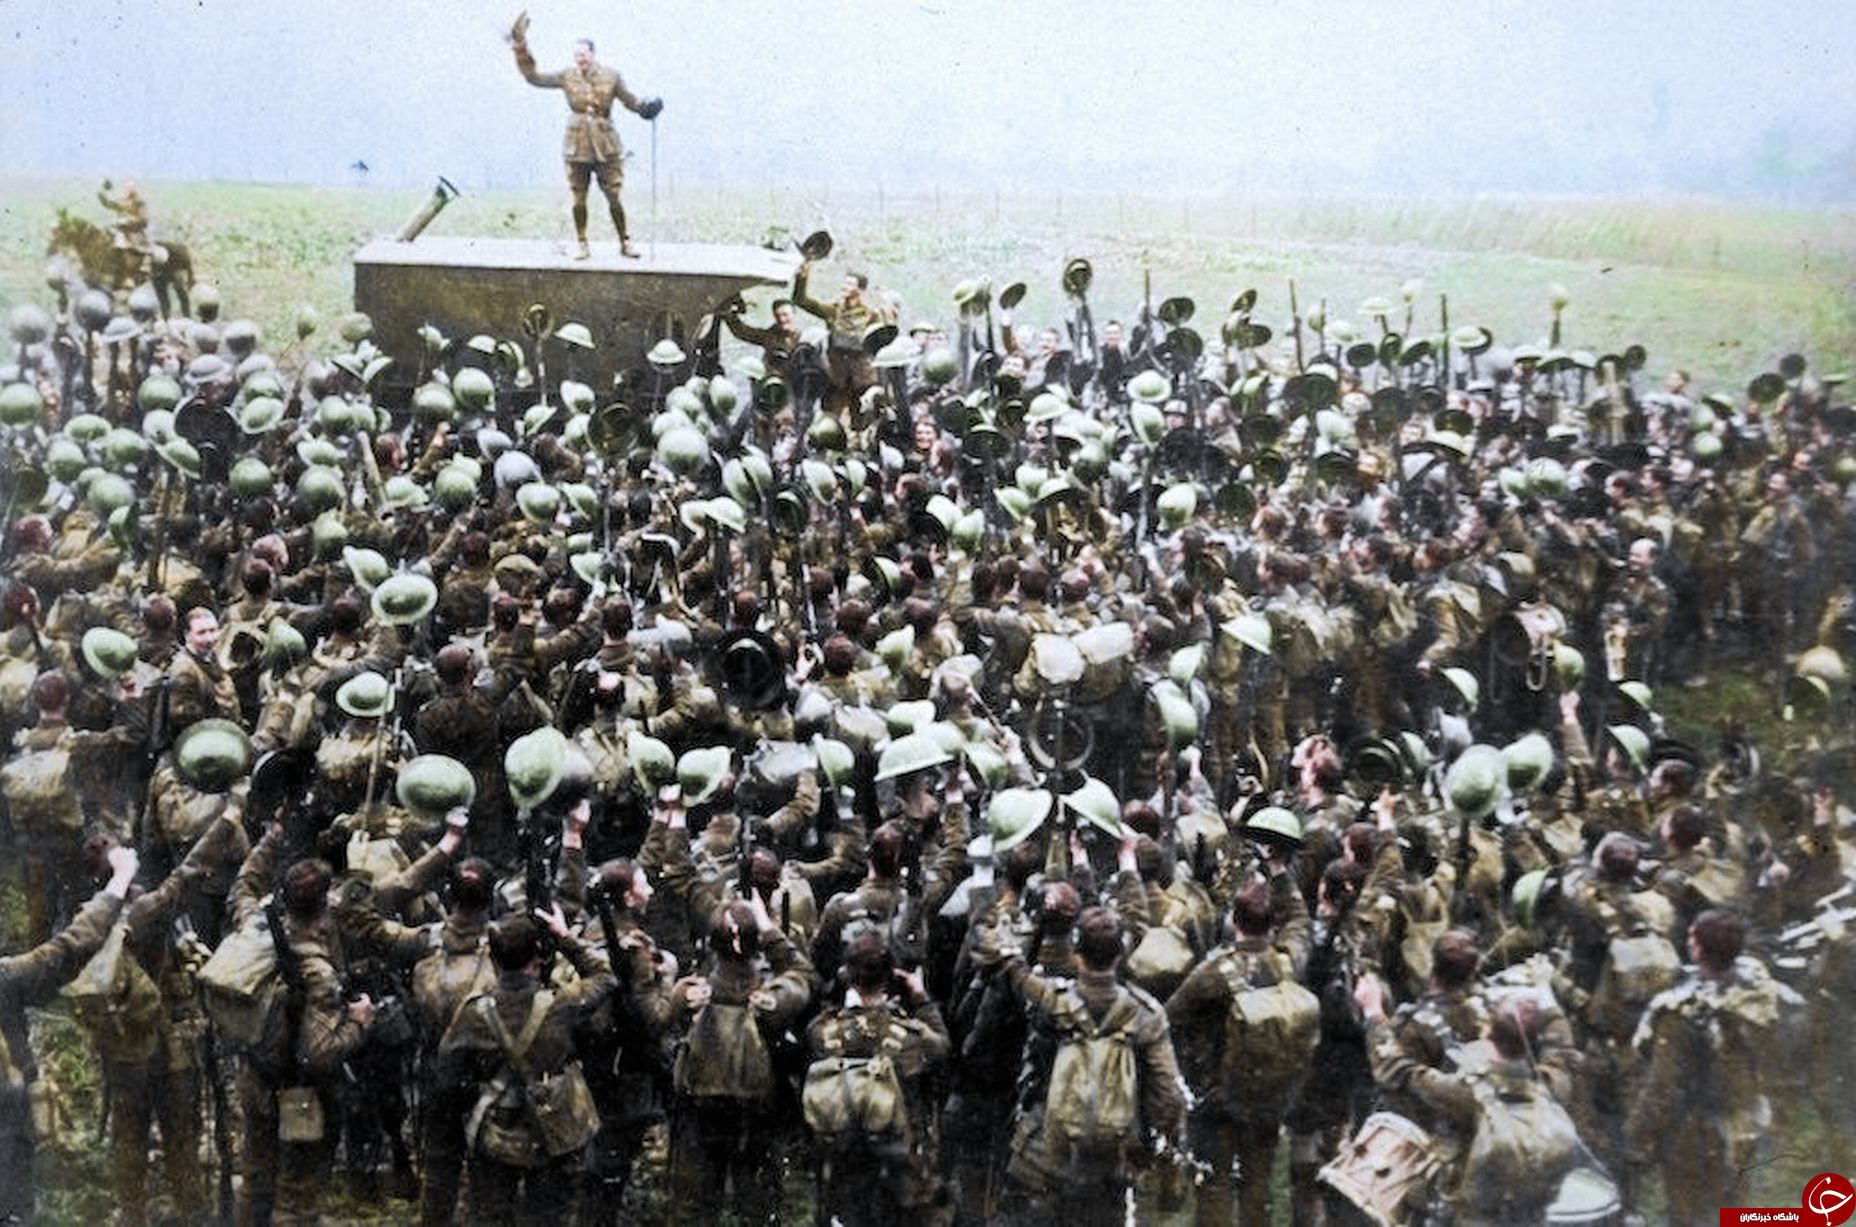 تصاویر رنگی دیده نشده از پایان جنگ جهانی اول